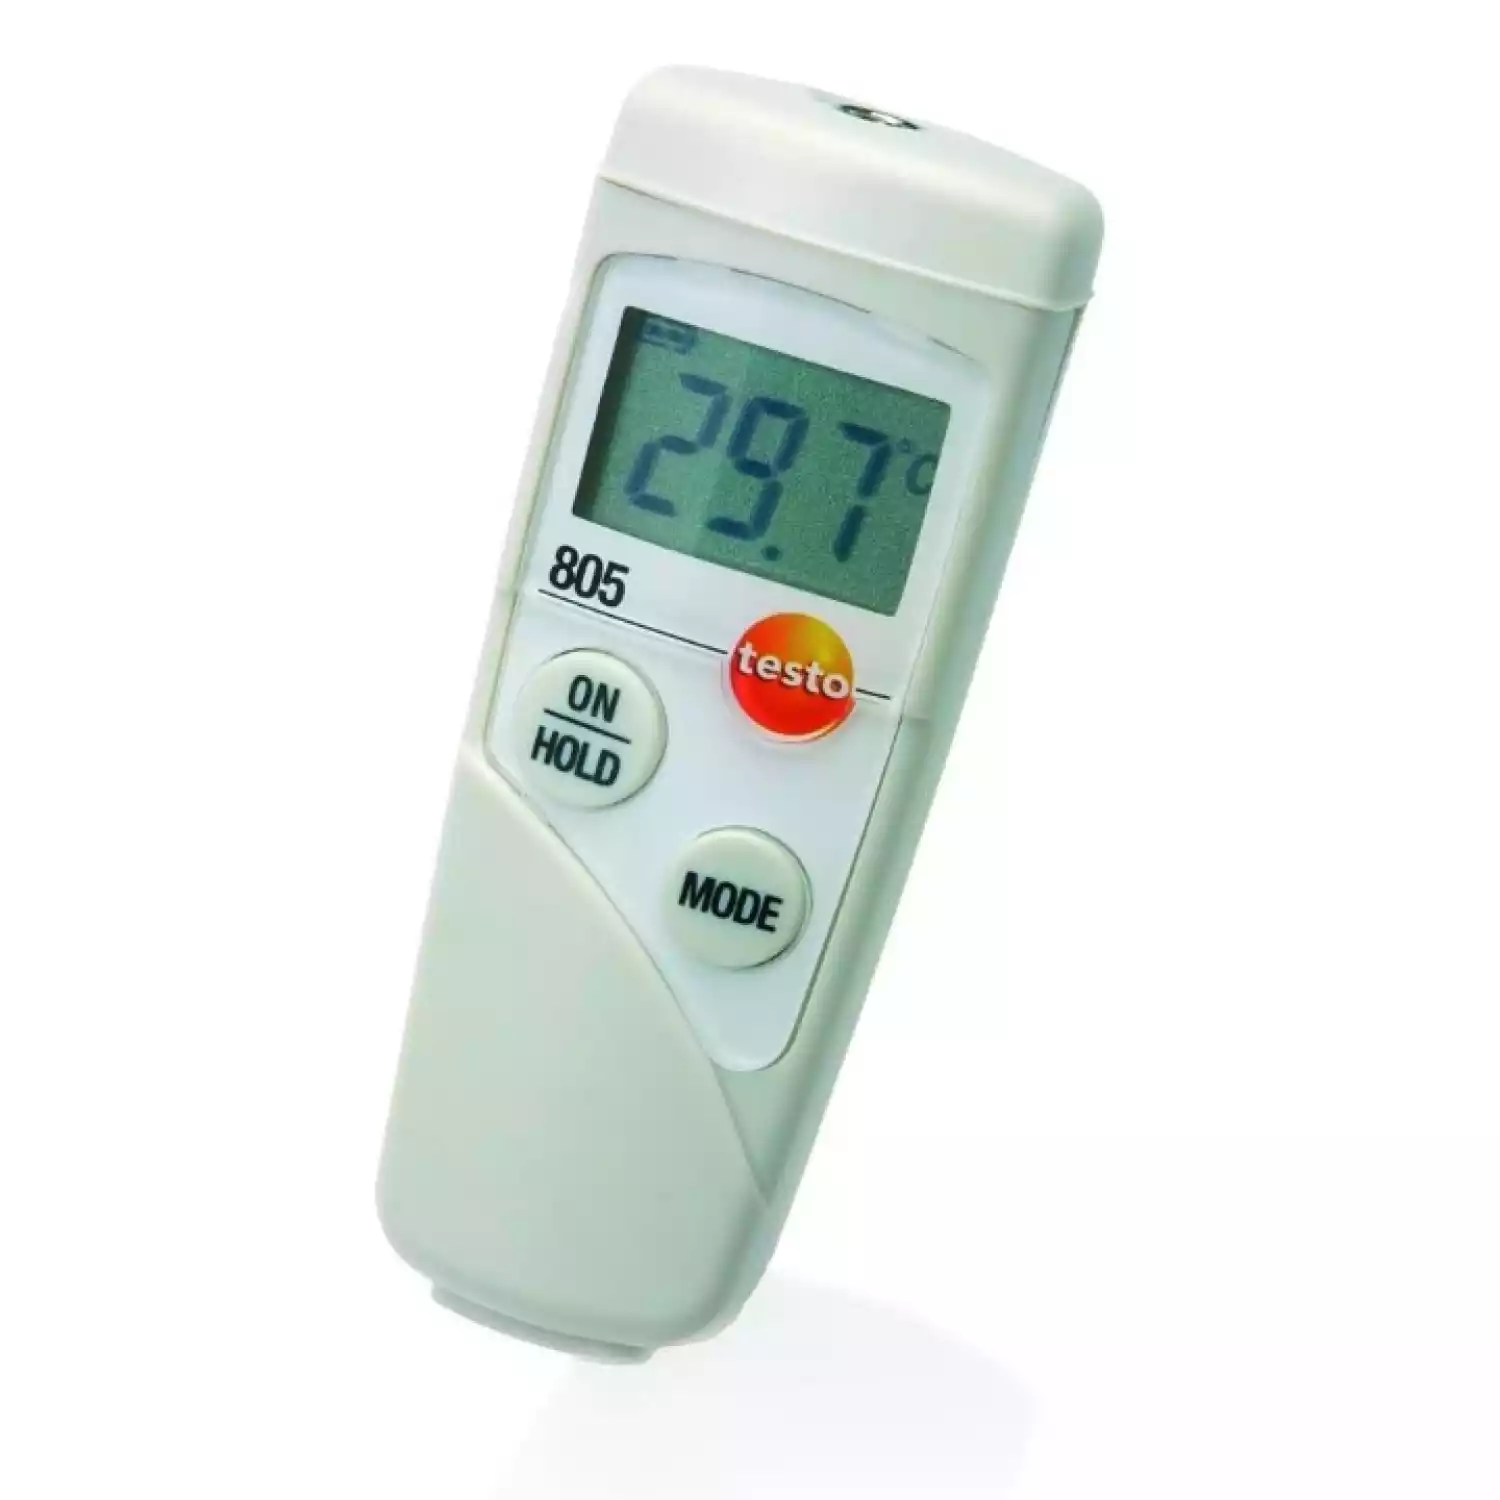 Testo 805 мини-термометр инфракрасный карманный с защитным чехлом TopSafe (комплект для быстрых измерений) - 1